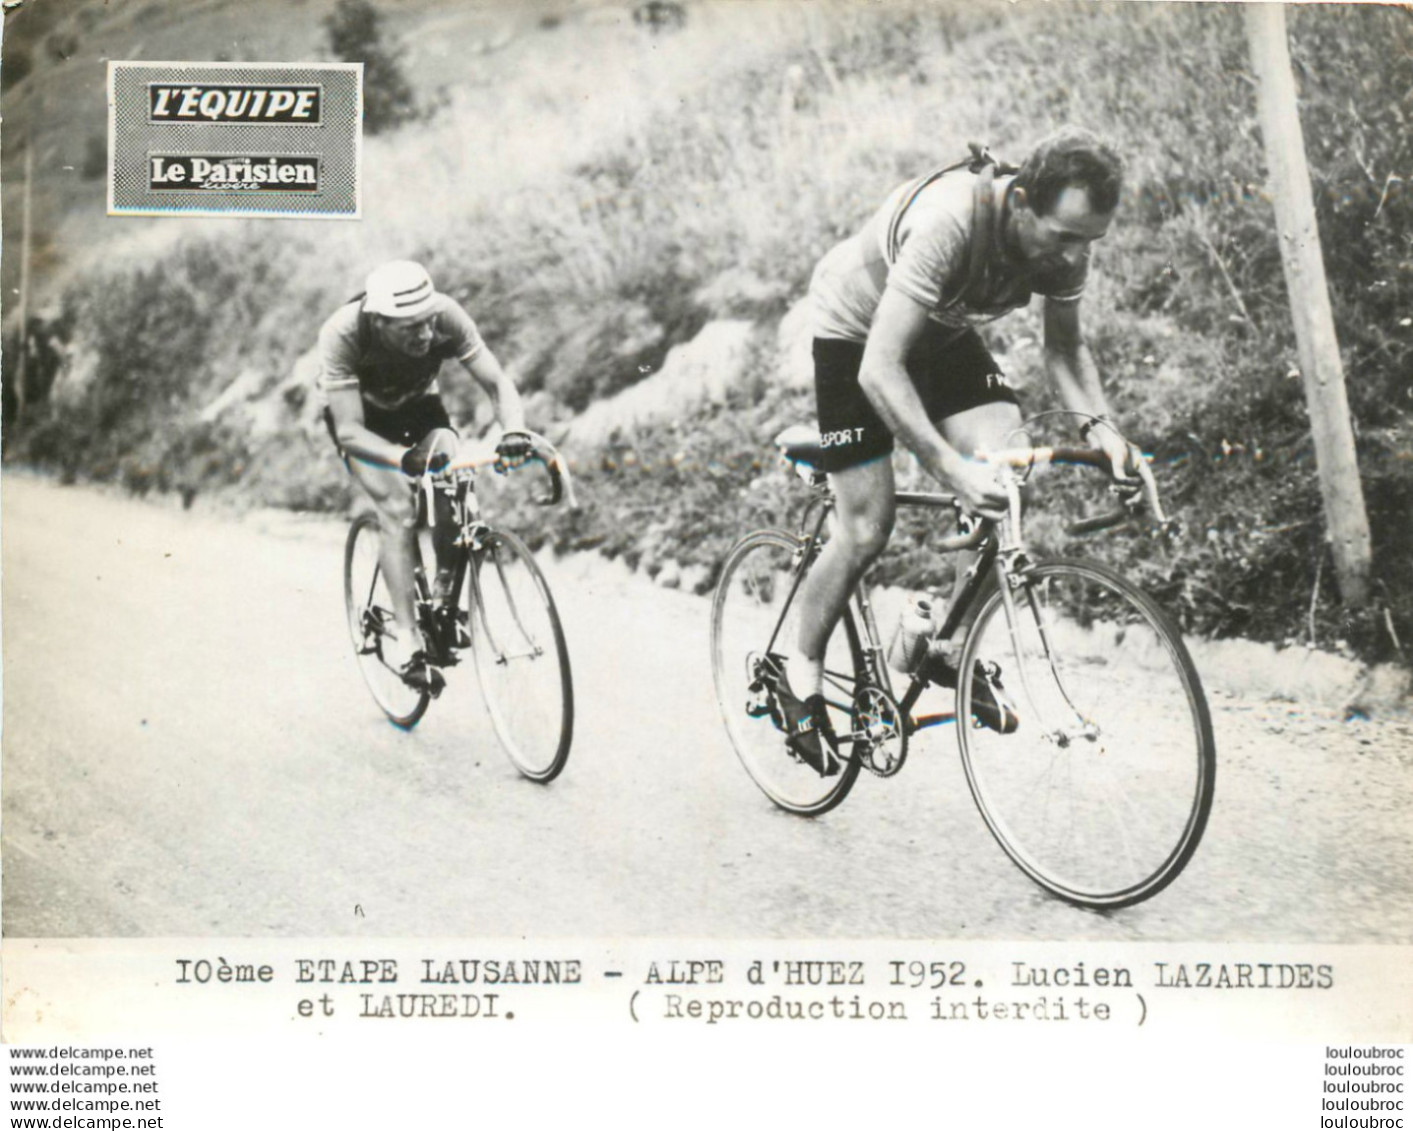 TOUR DE FRANCE 1952 LAZARIDES - LAUREDI  10ème ETAPE PHOTO DE PRESSE ORIGINALE ARGENTIQUE  20X15CM EQUIPE  LE PARISIEN - Sports